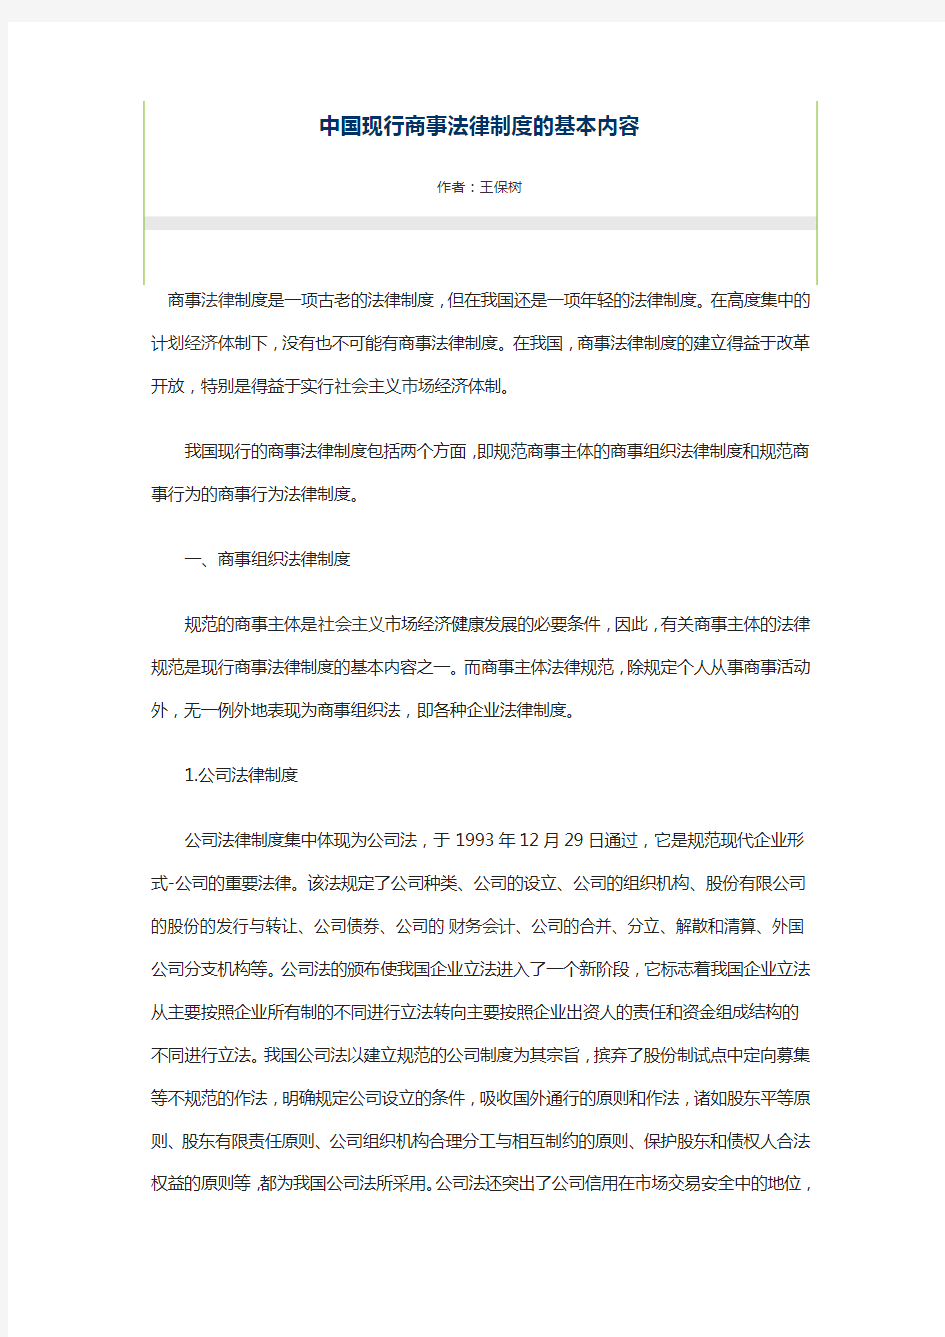 中国现行商事法律制度的基本内容